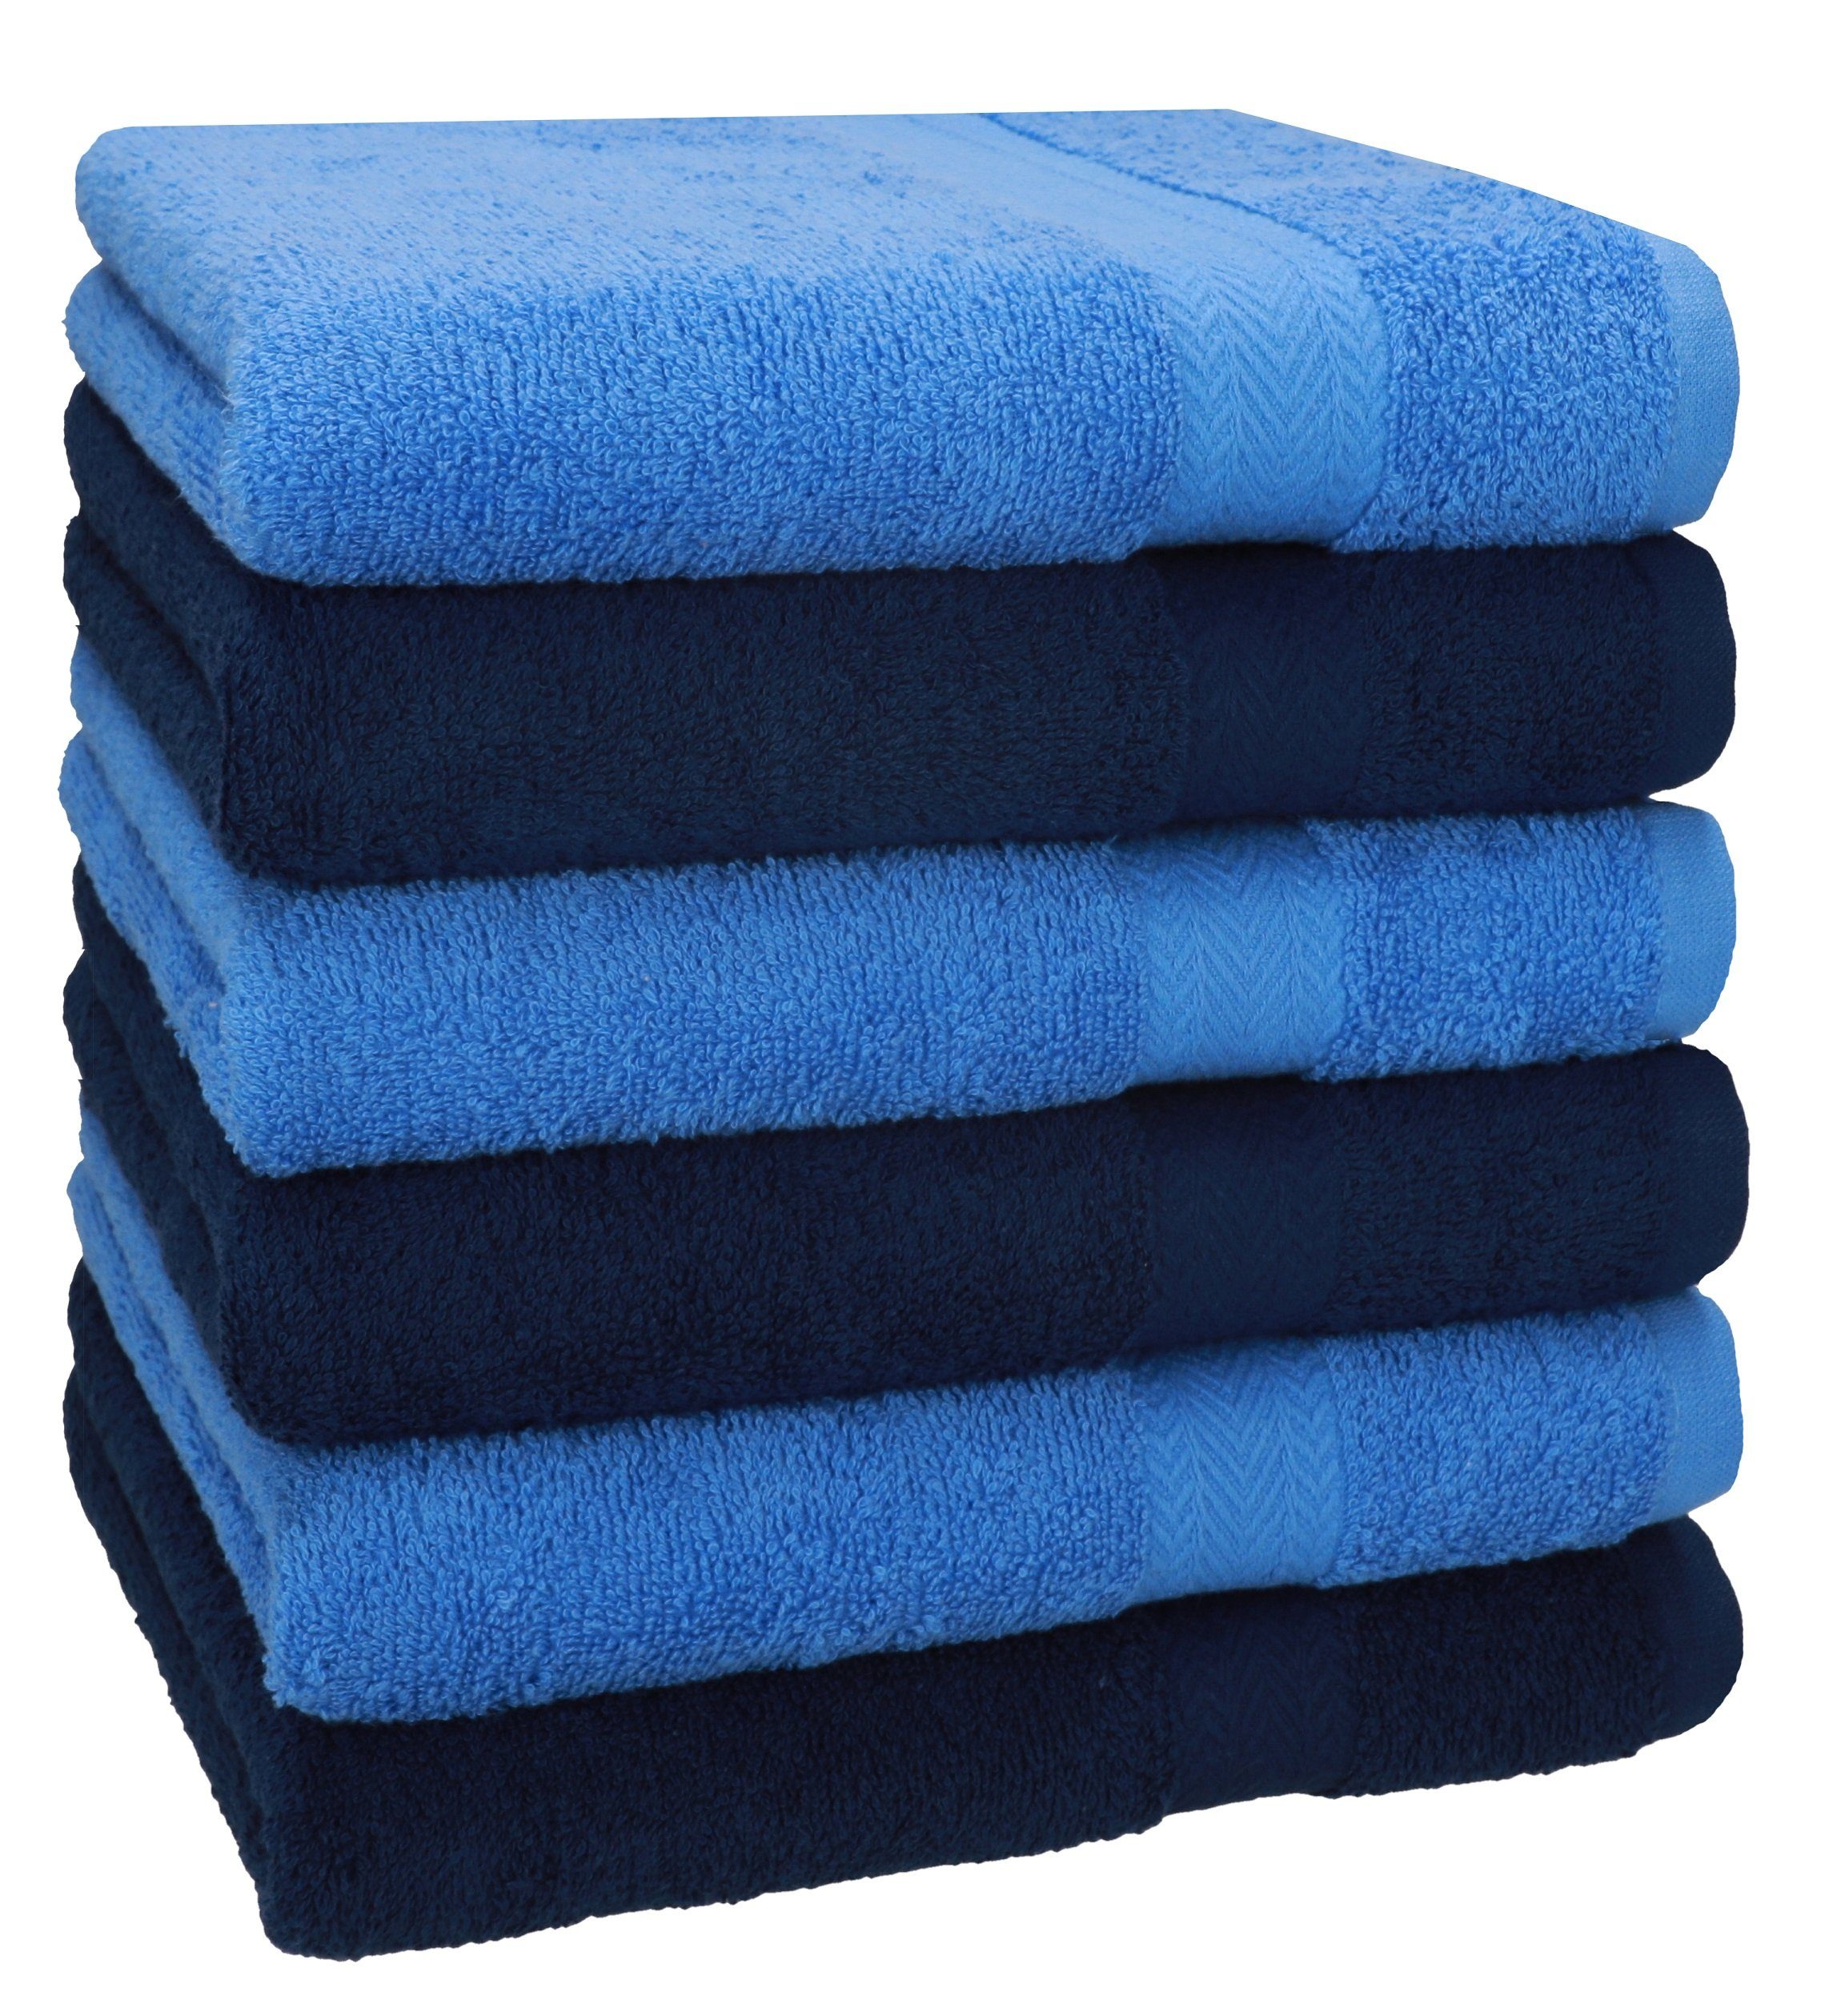 Betz Handtücher 6 Stück Handtücher Größe 50 x 100 cm Premium Handtuch Set 100% Baumwolle Farbe dunkelblau/hellblau, 100% Baumwolle (6-St)